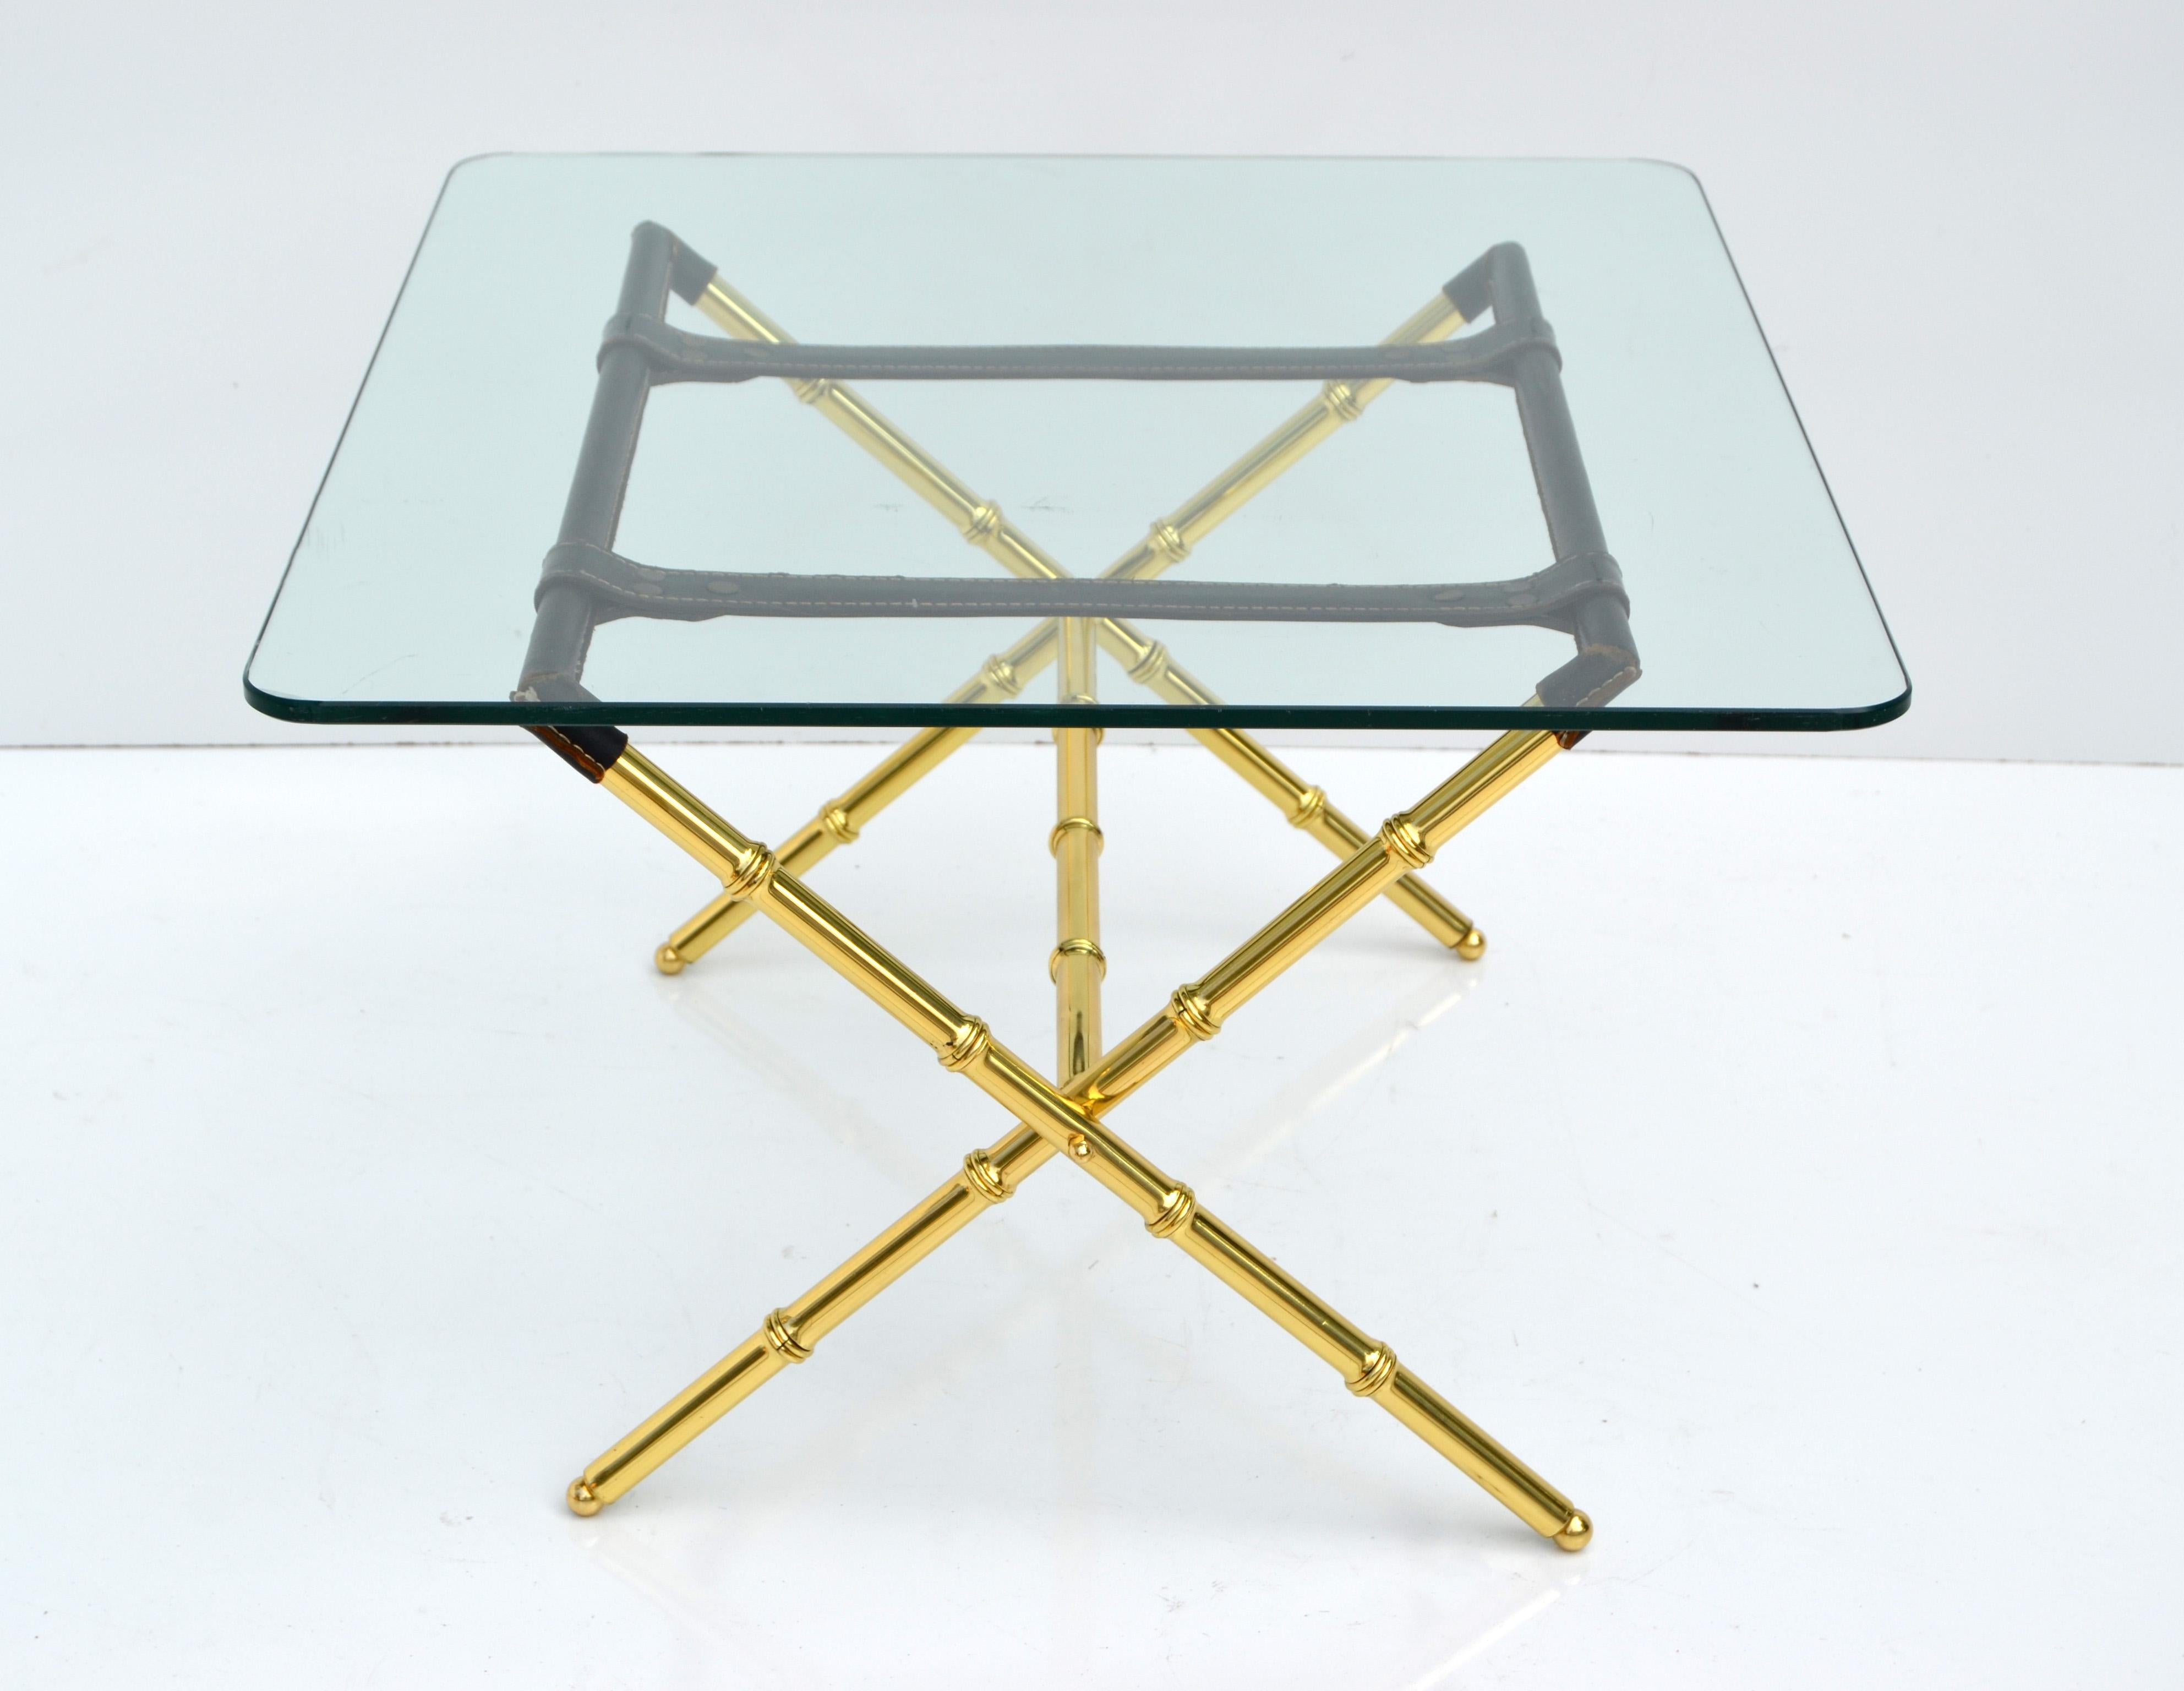 Superbe table basse en verre de Jacques Adnet, avec une base en X en laiton poli et plié, en faux bambou avec des reliures en cuir cousues à la main.
Le plateau en verre rectangulaire a des bords arrondis et son épaisseur est de 0,38 pouce.
La